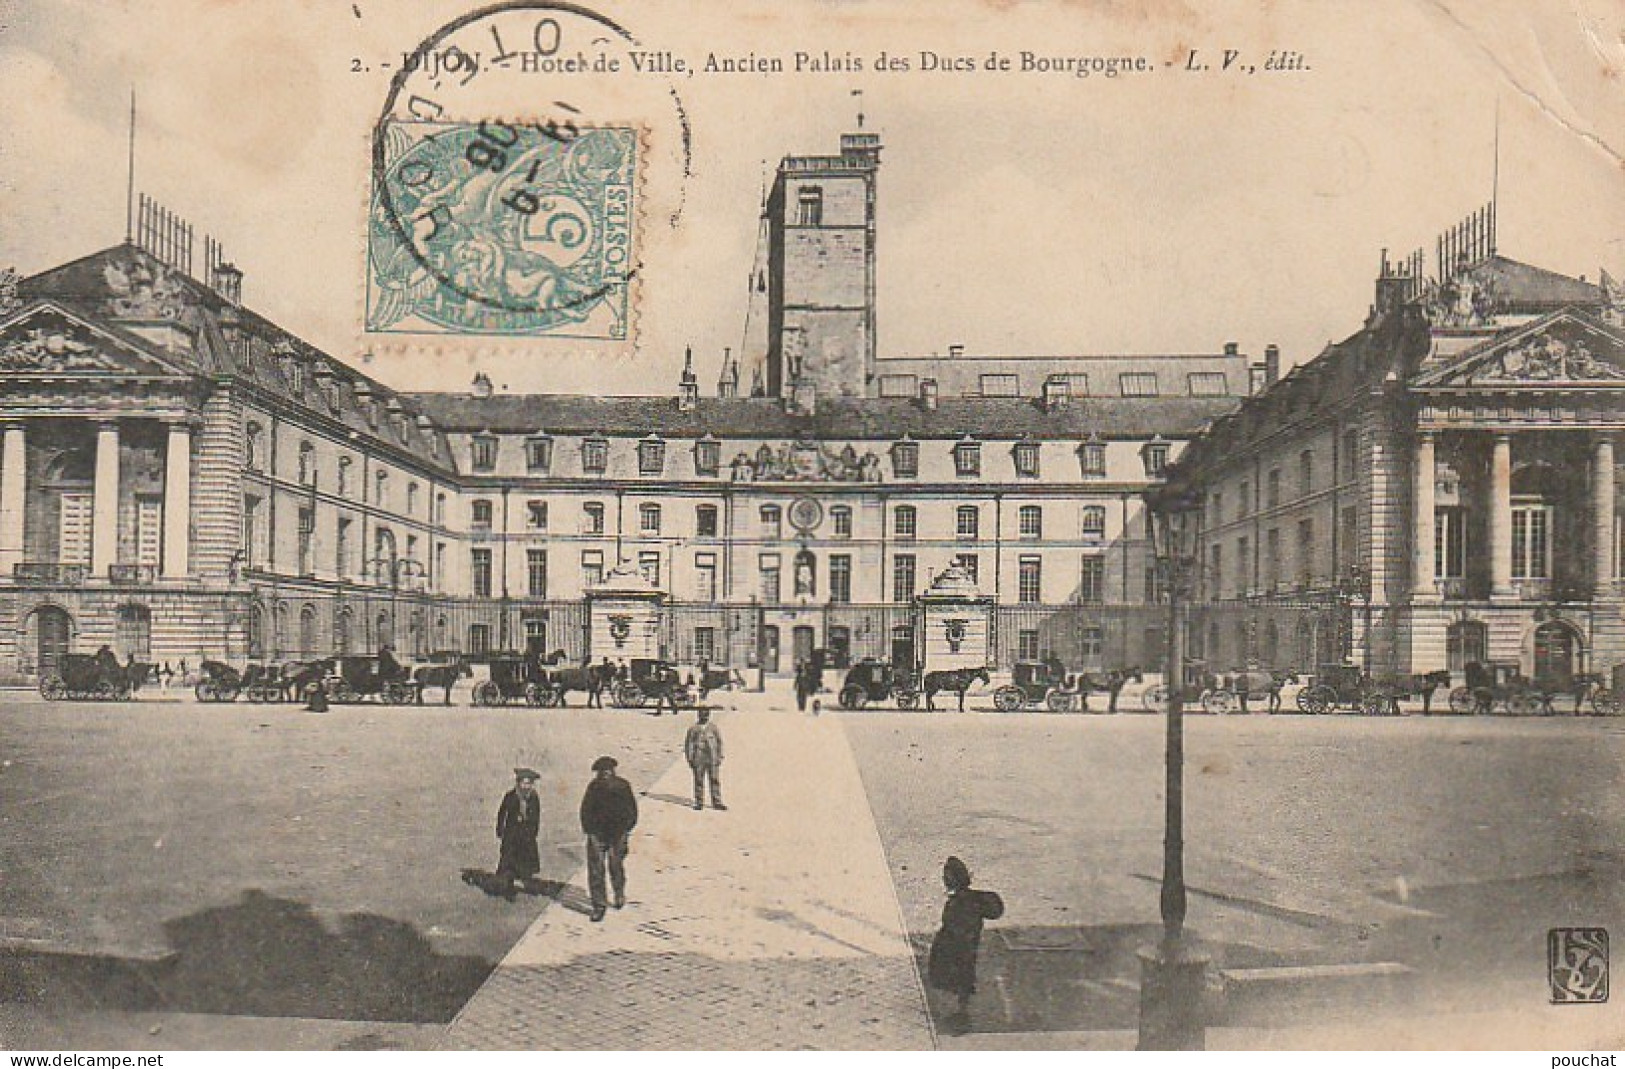 PE 21-(21) DIJON - HOTEL DE VILLE , ANCIEN PALAIS DES DUCS DE BOURGOGNE - CALECHES , FIACRES - 2 SCANS - Dijon